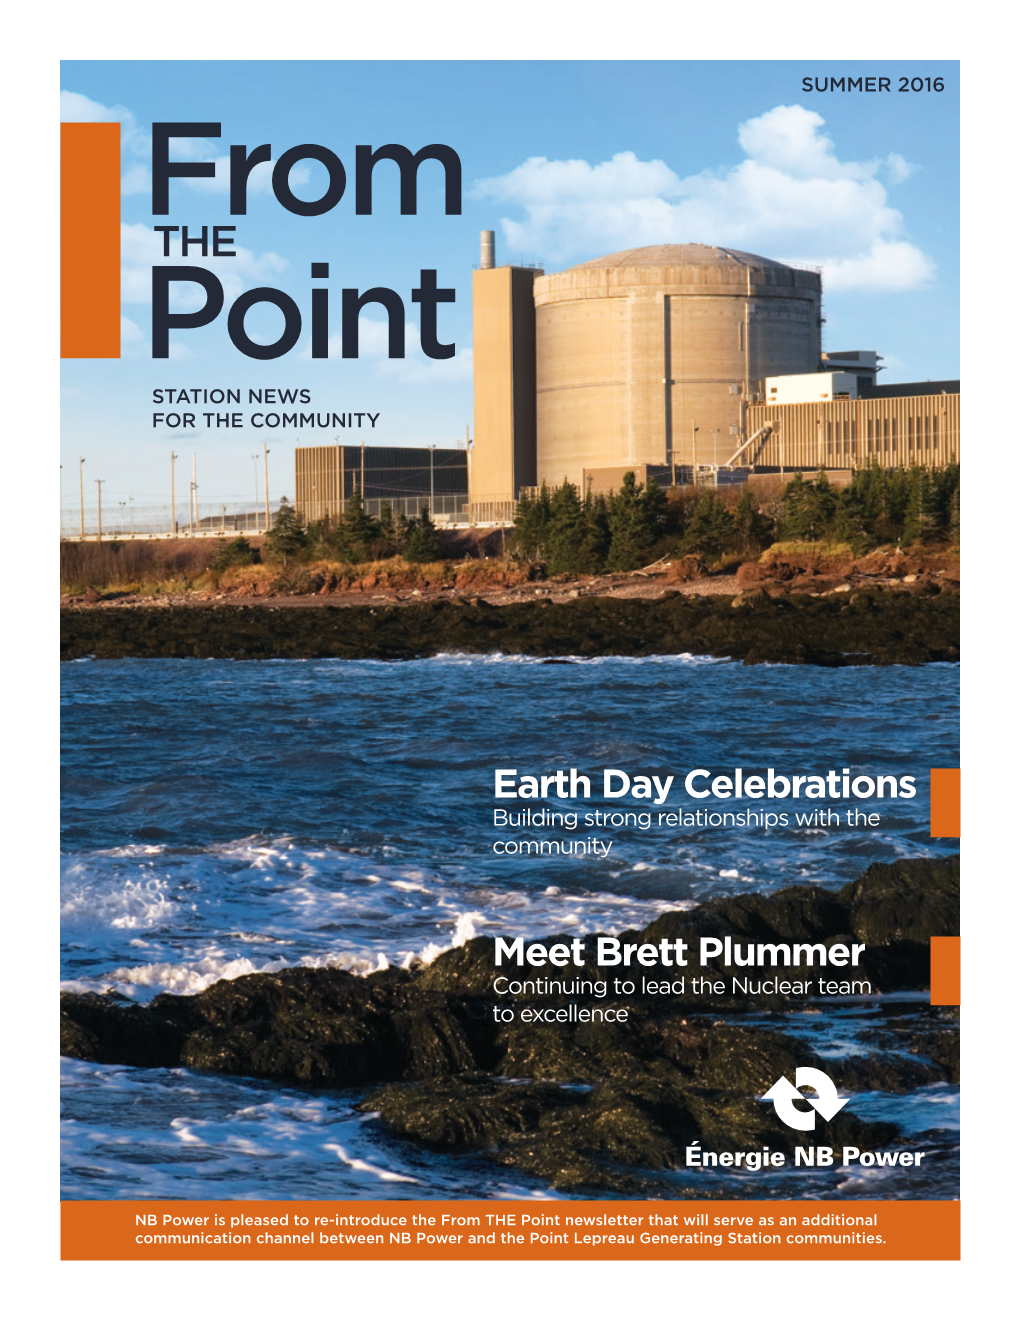 Earth Day Celebrations Meet Brett Plummer